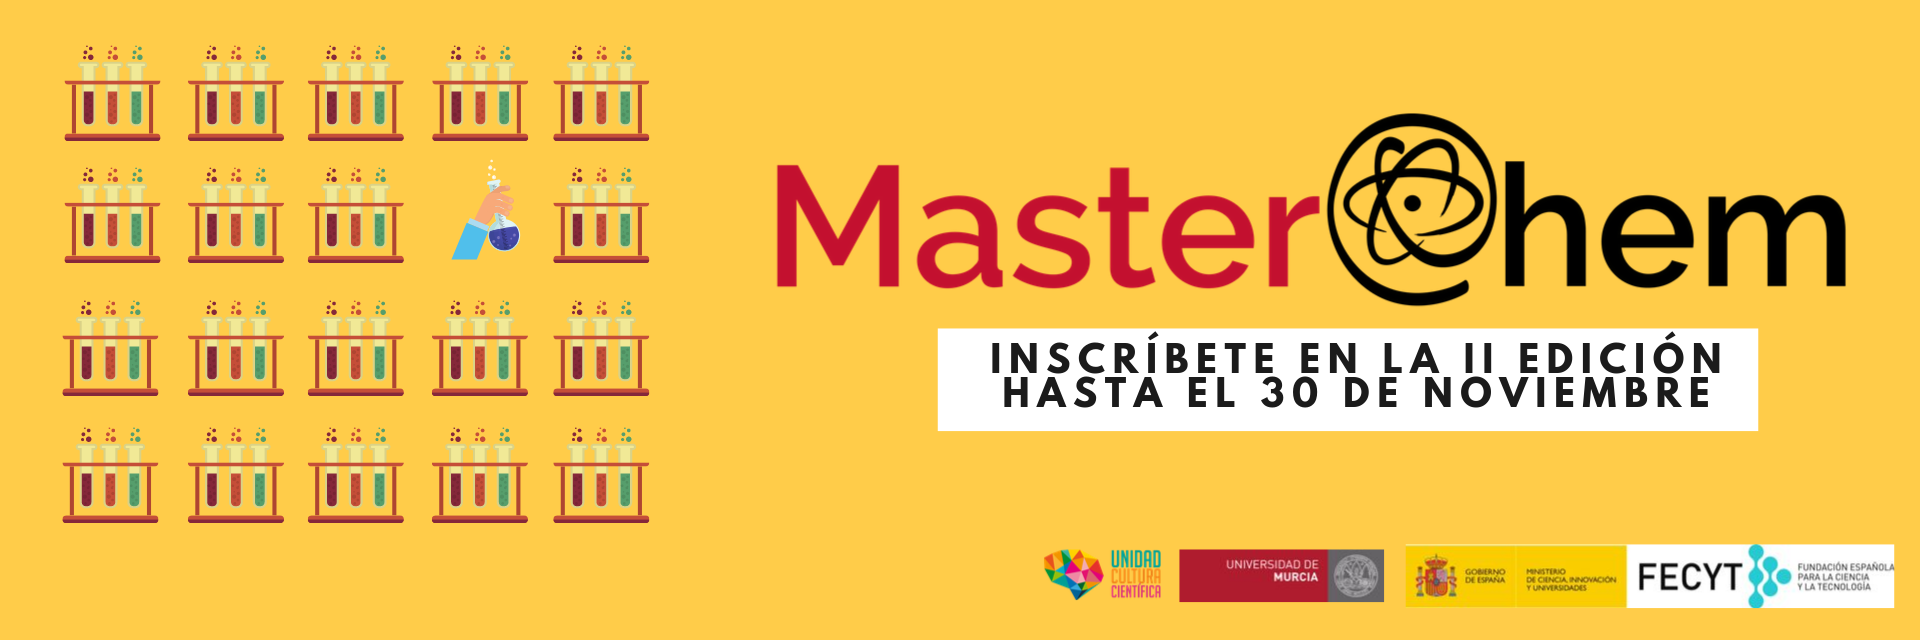 Aún puedes participar en el certamen químico de la Universidad de Murcia ‘MasterChem’